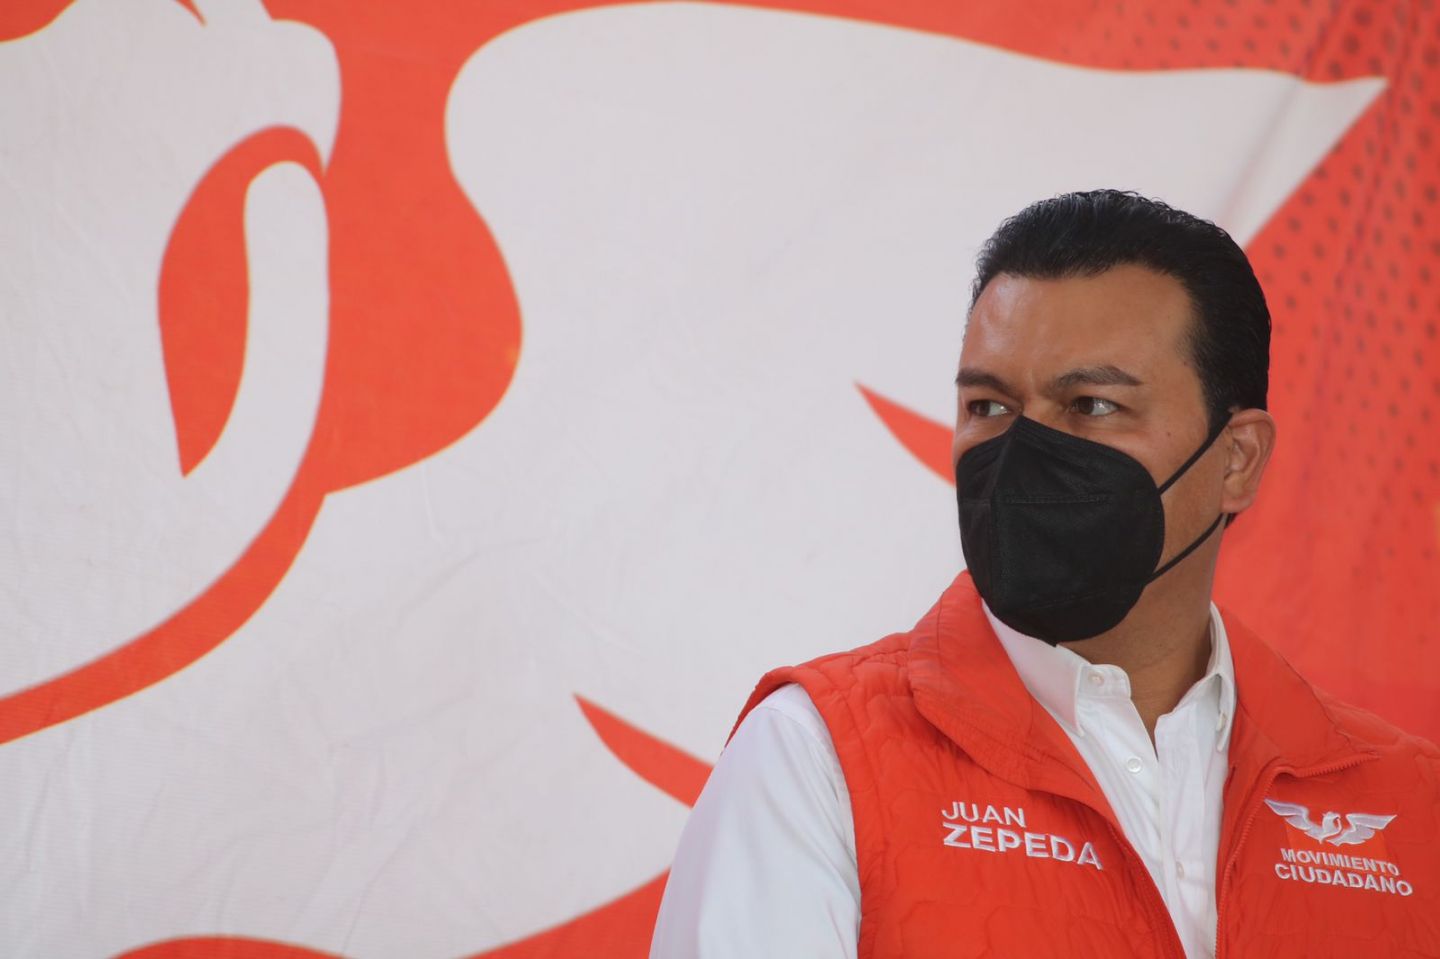 Juan Zepeda libre de actos anticipados de campaña 